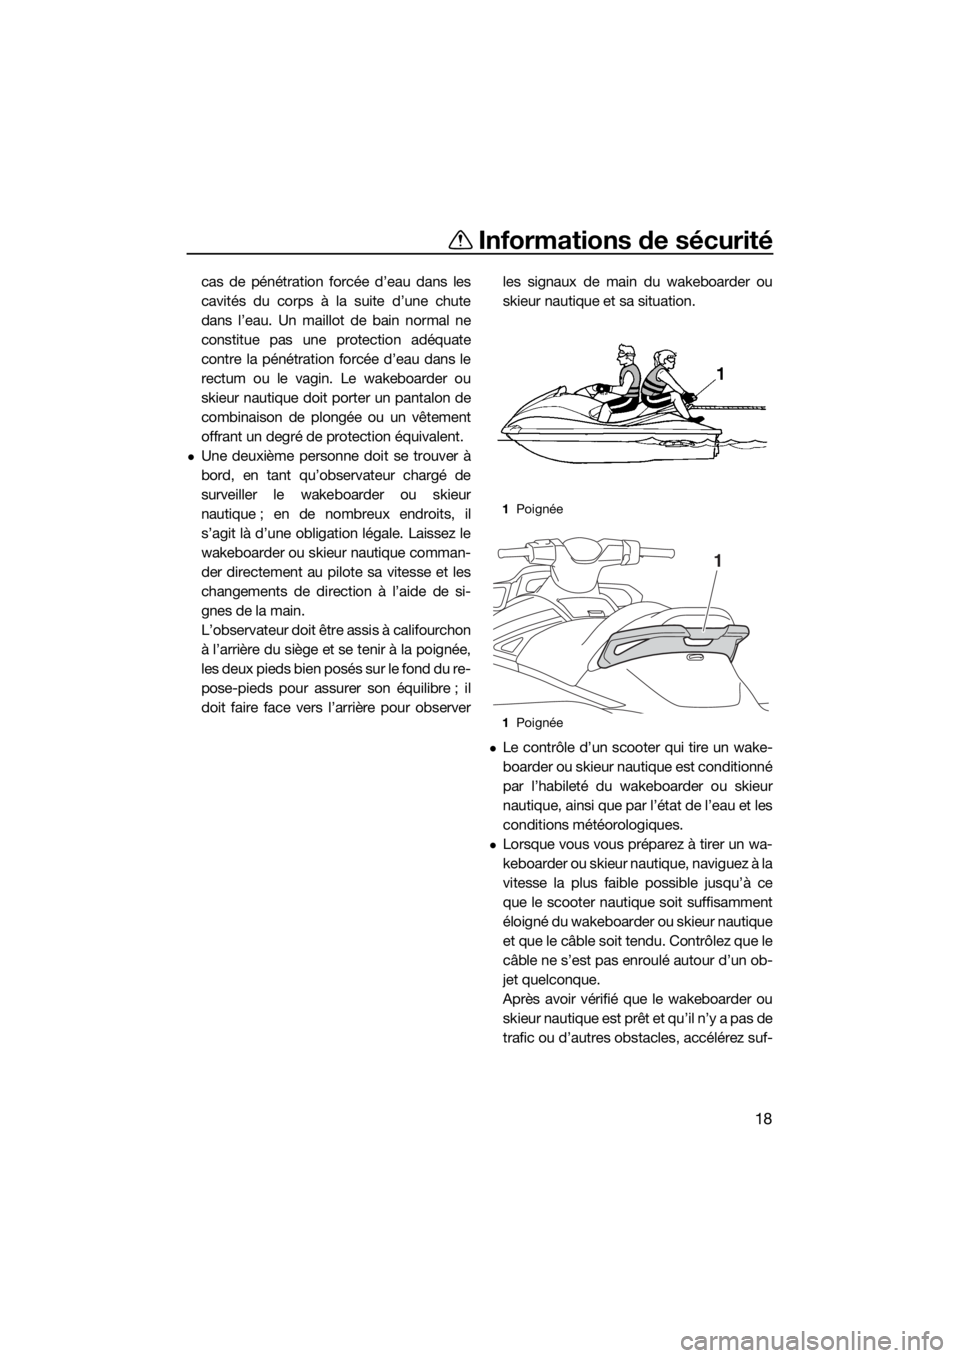 YAMAHA GP1800 2017  Notices Demploi (in French) Informations de sécurité
18
cas de pénétration forcée d’eau dans les
cavités du corps à la suite d’une chute
dans l’eau. Un maillot de bain normal ne
constitue pas une protection adéquat